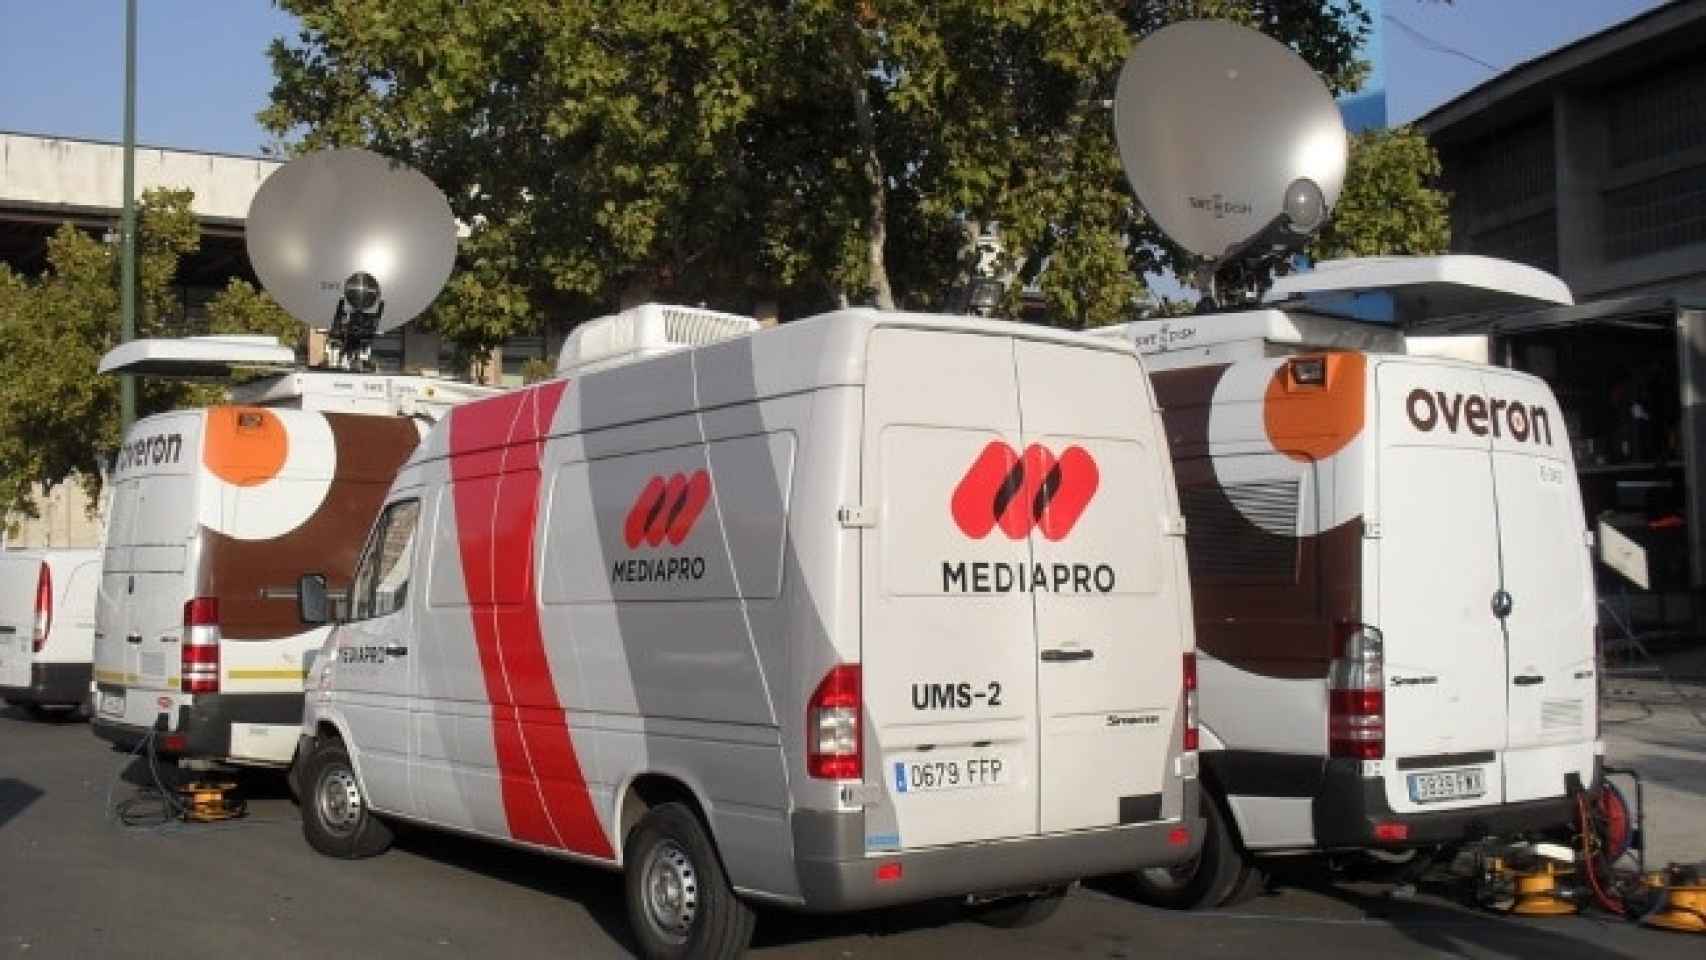 Unidades móviles de Mediapro para cubrir eventos deportivos